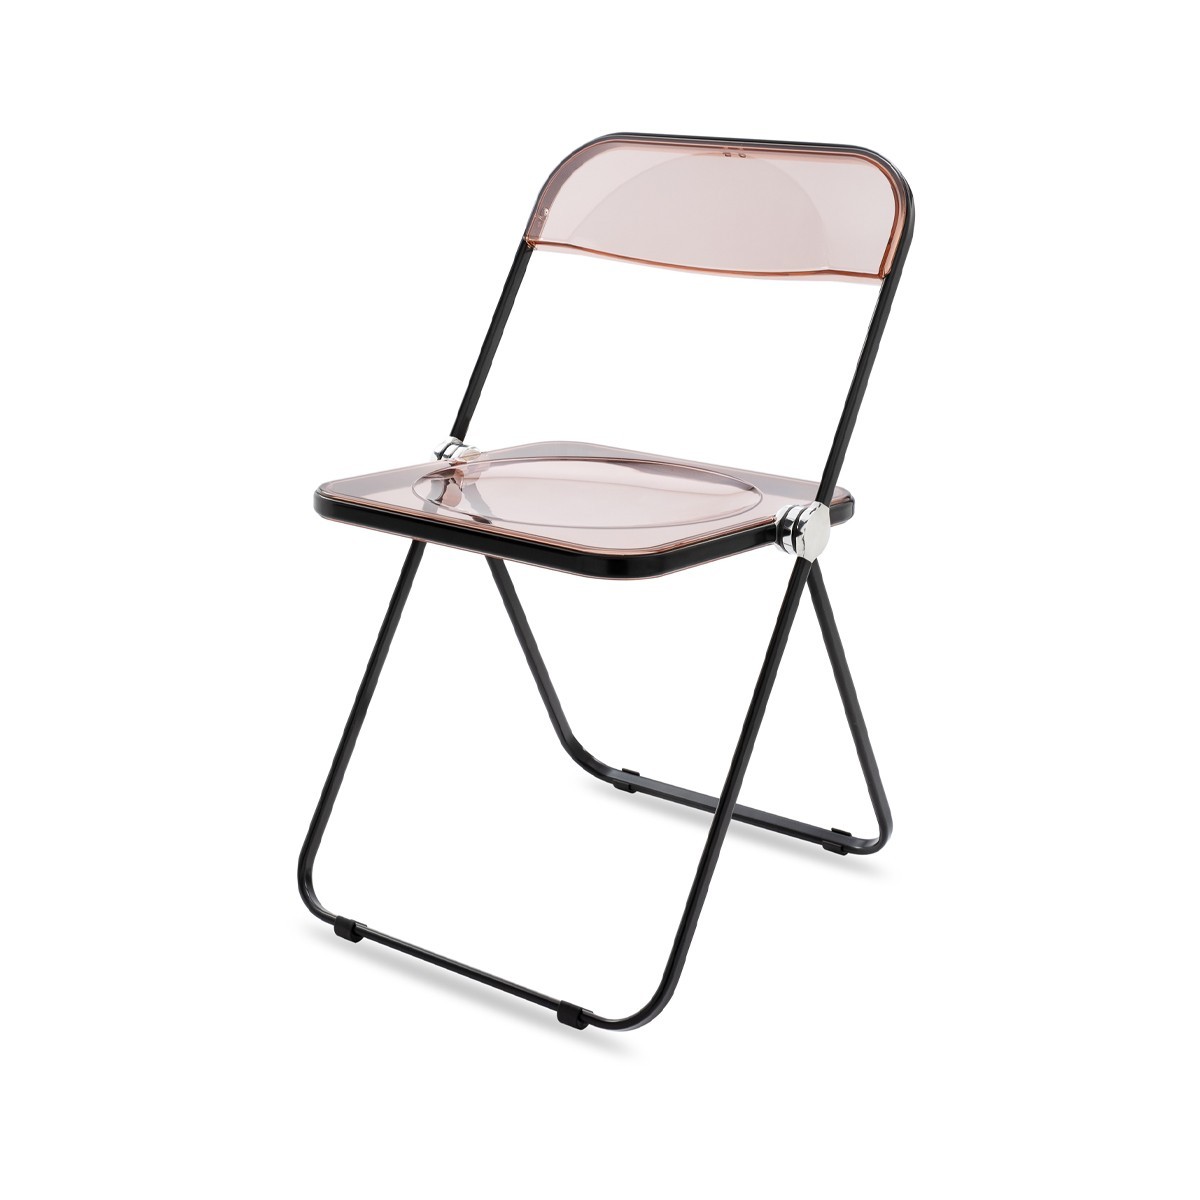 Plia Chair (9 colors)